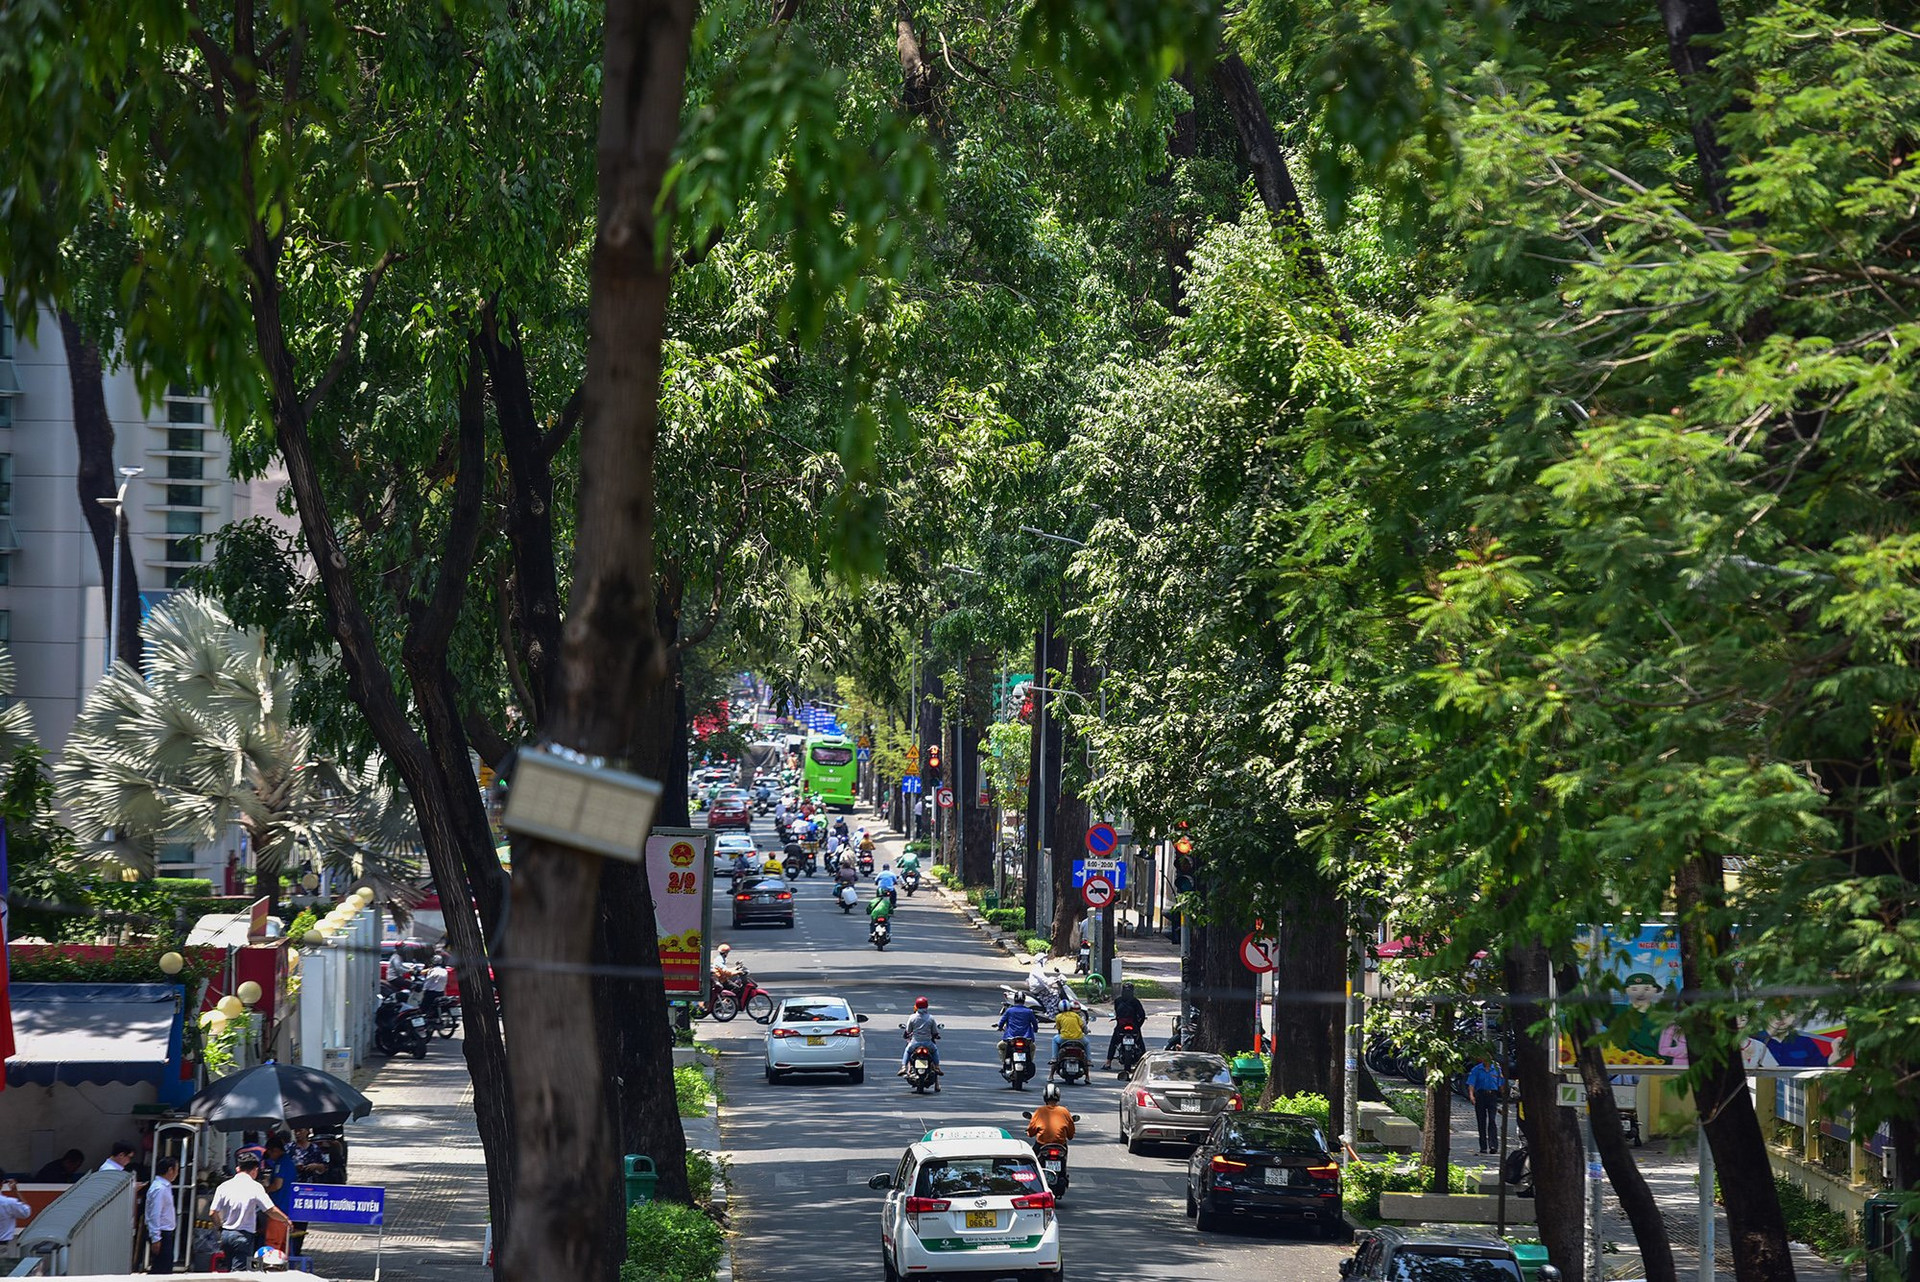 TP. HCM vẫn còn cần nhiều hơn những khoảng không gian xanh. Ảnh: Vietnam Daily - Chuyên trang của Báo Tri thức & Cuộc sống